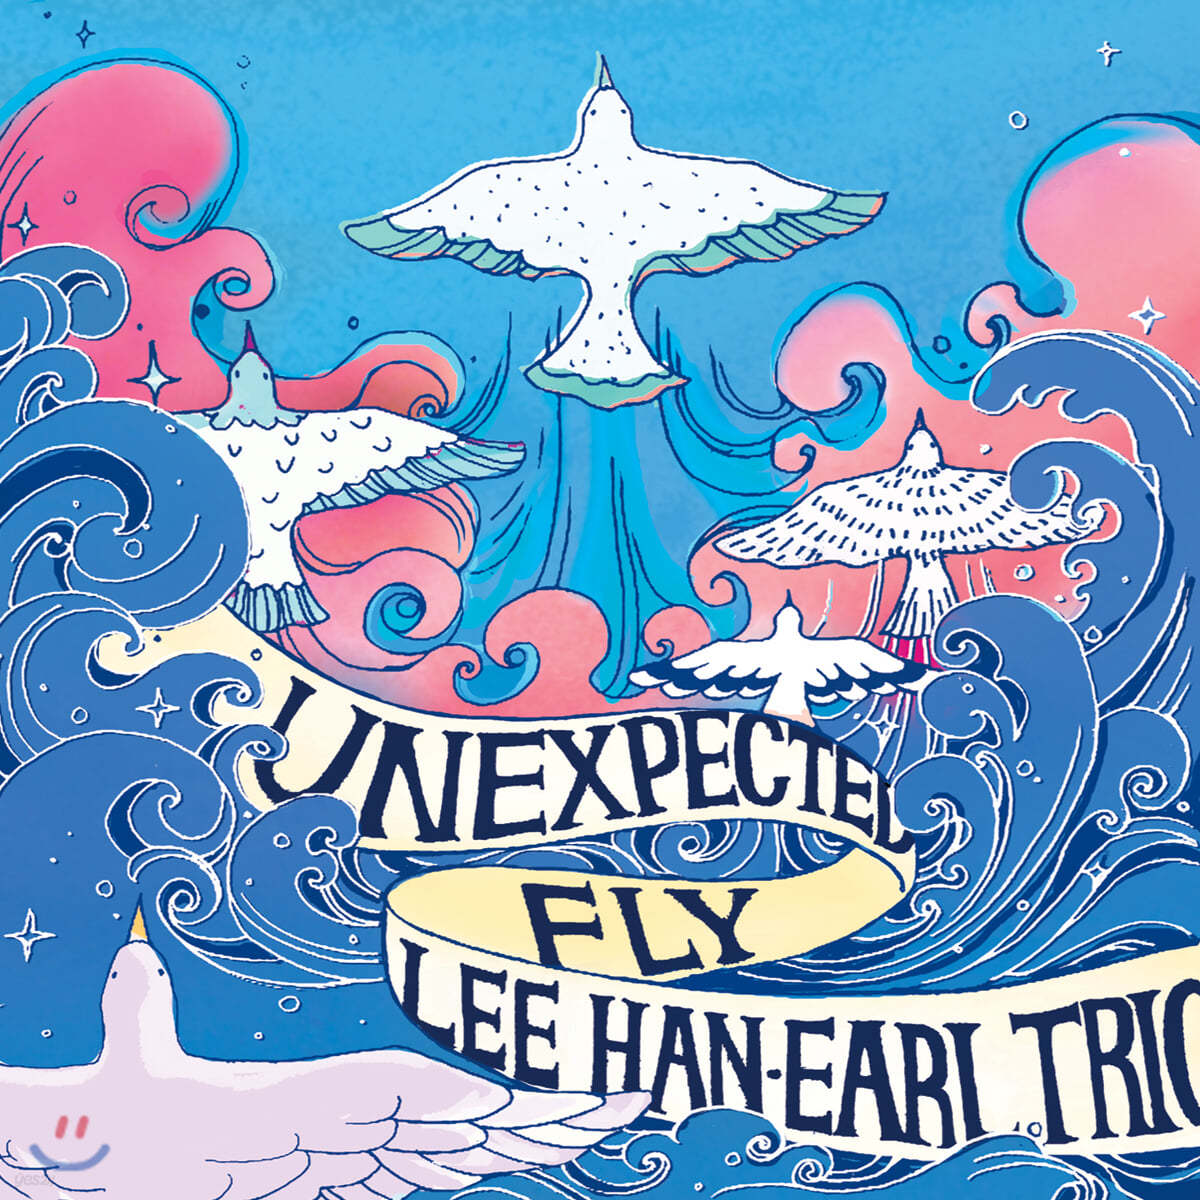 이한얼 트리오 (Lee Han-Earl Trio) 2집 - Unexpected Fly